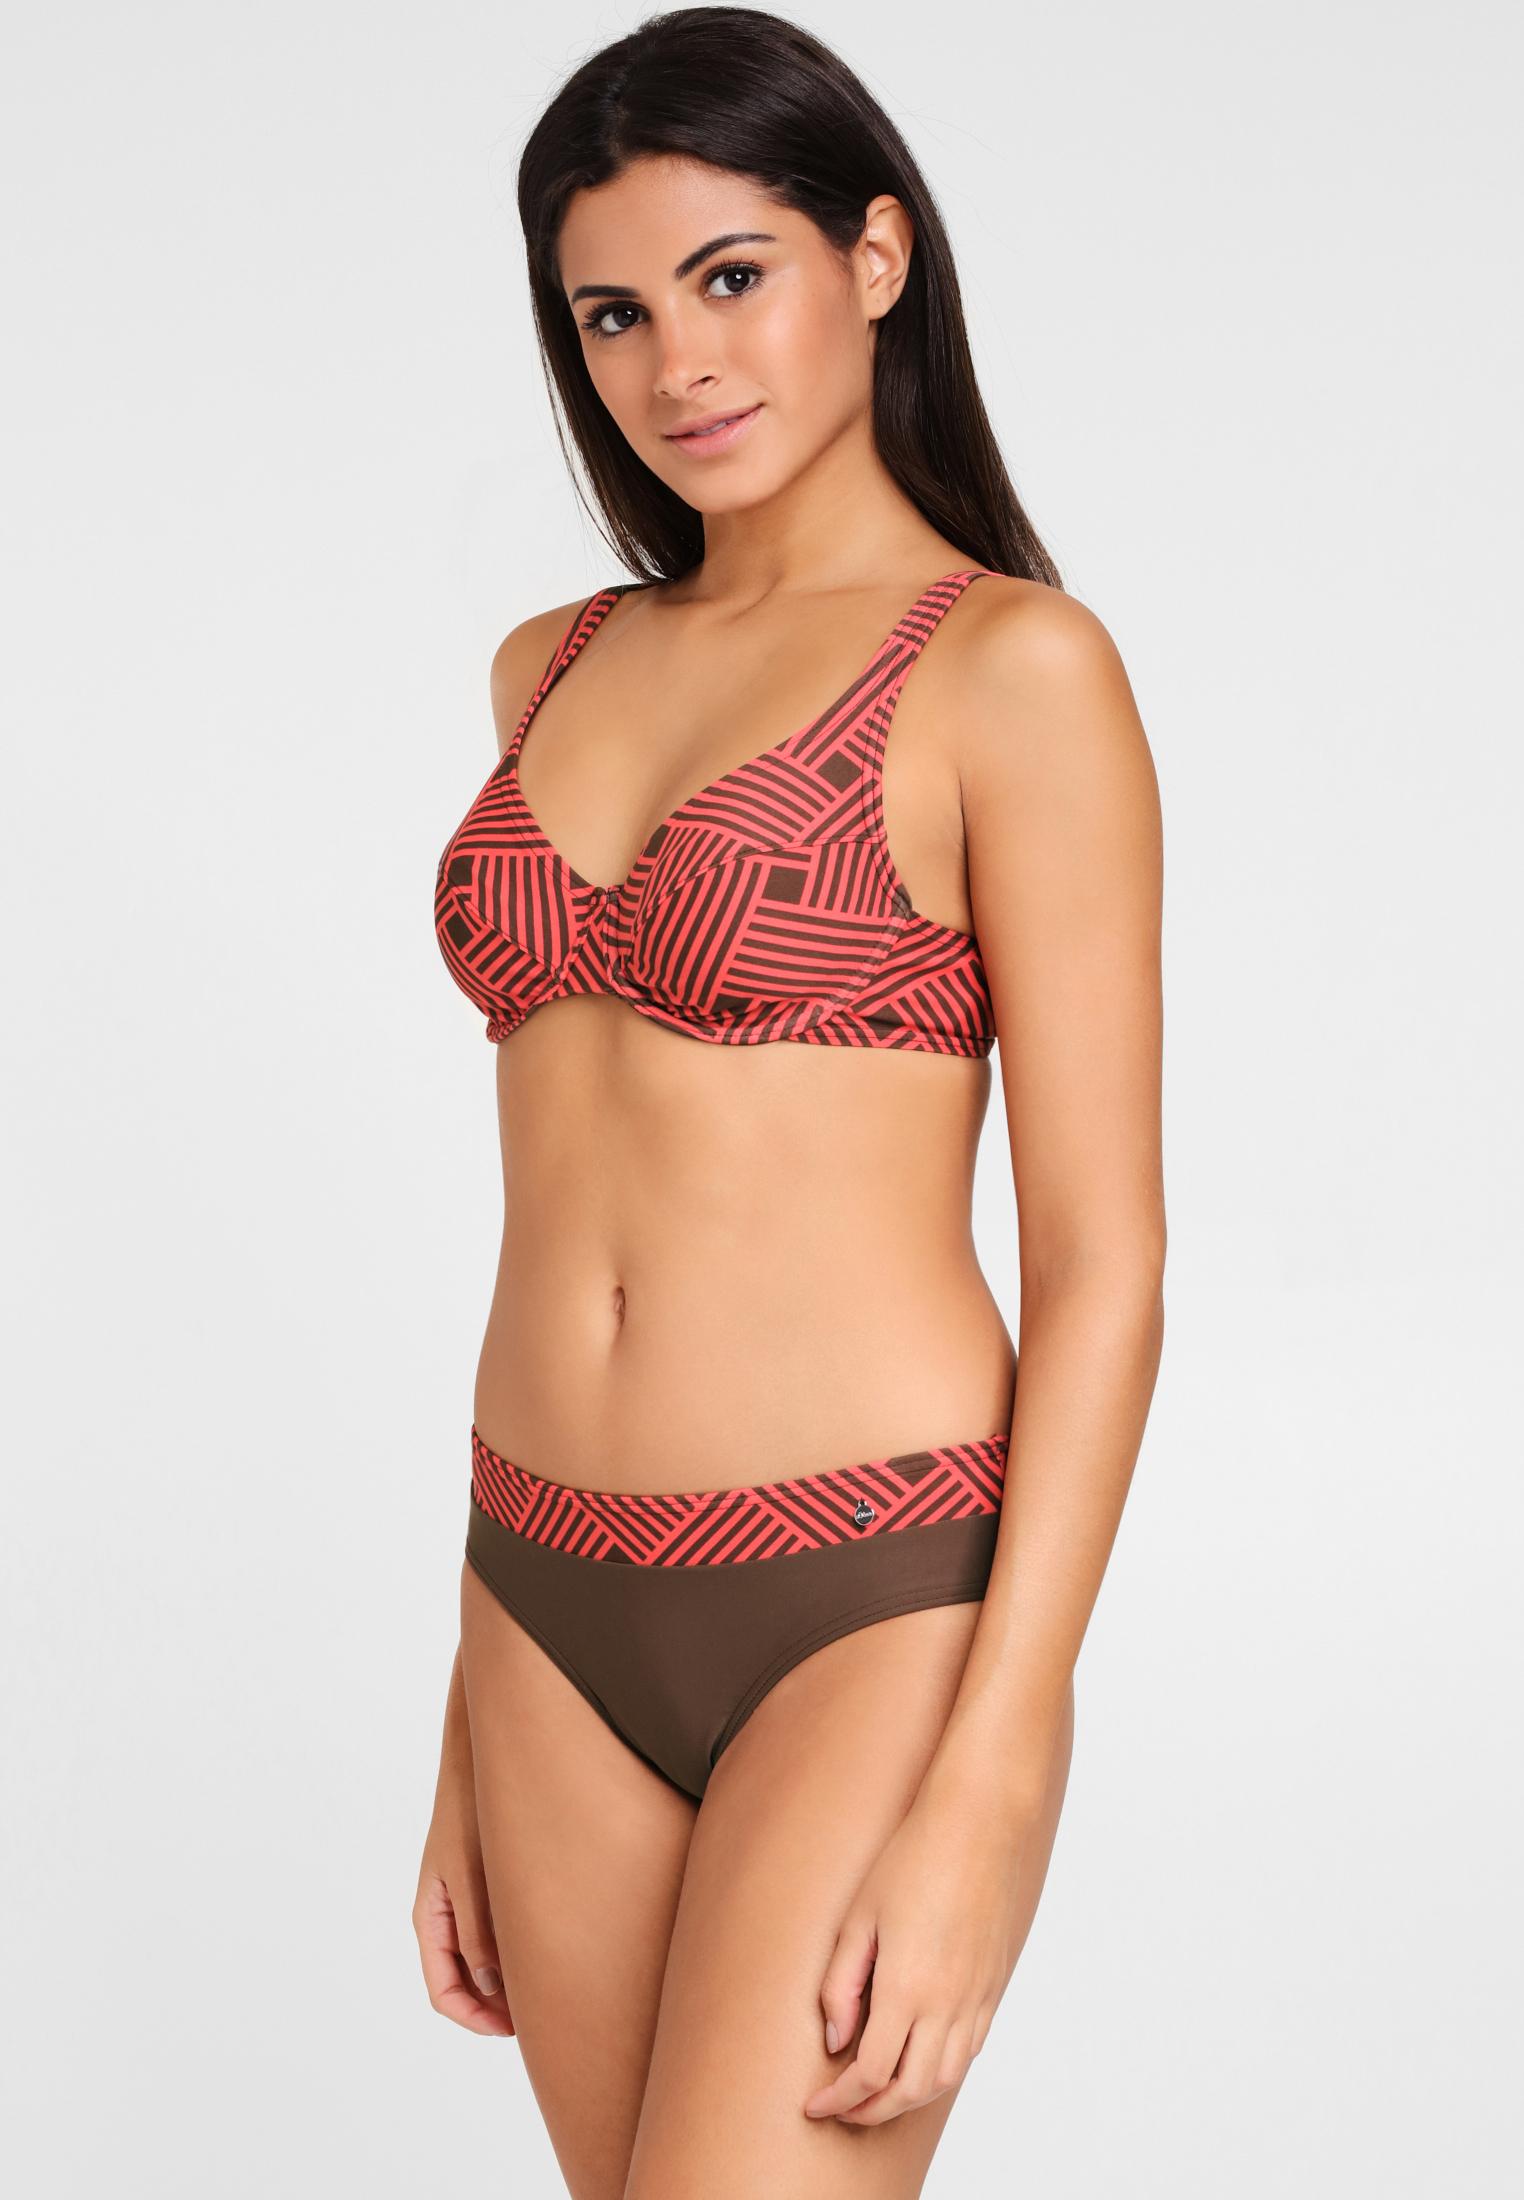 S.OLIVER Bikini Set Damen rot-braun Online kaufen im Shop von SportScheck